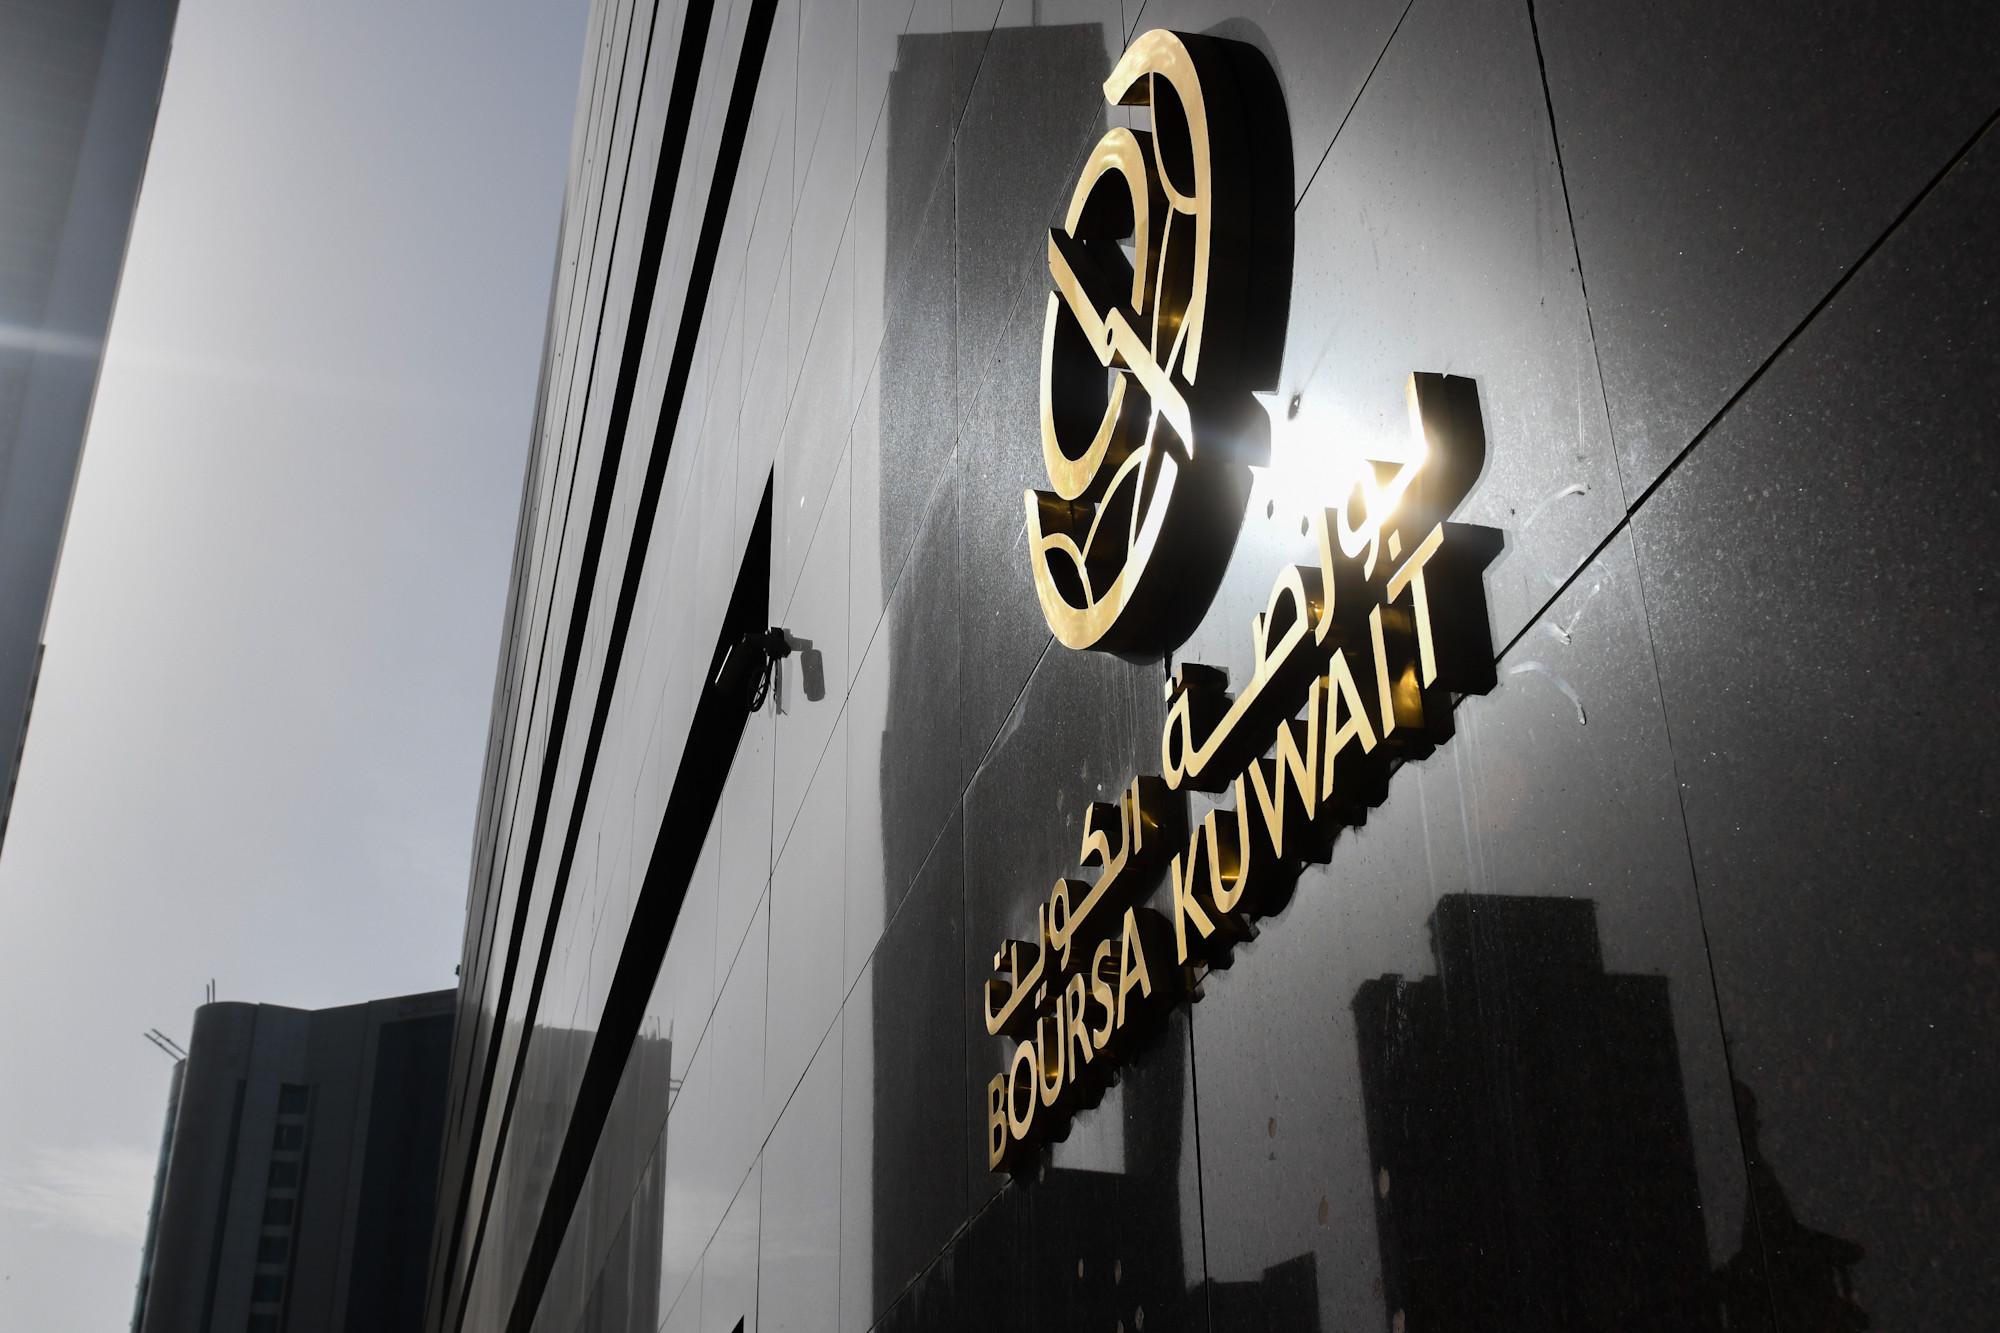 بورصة الكويت تغلق تعاملاتها على ارتفاع مؤشرها العام 12ر38 نقطة ليبلغ 99ر7027 بنسبة 55ر0 بالمئة                                                                                                                                                            